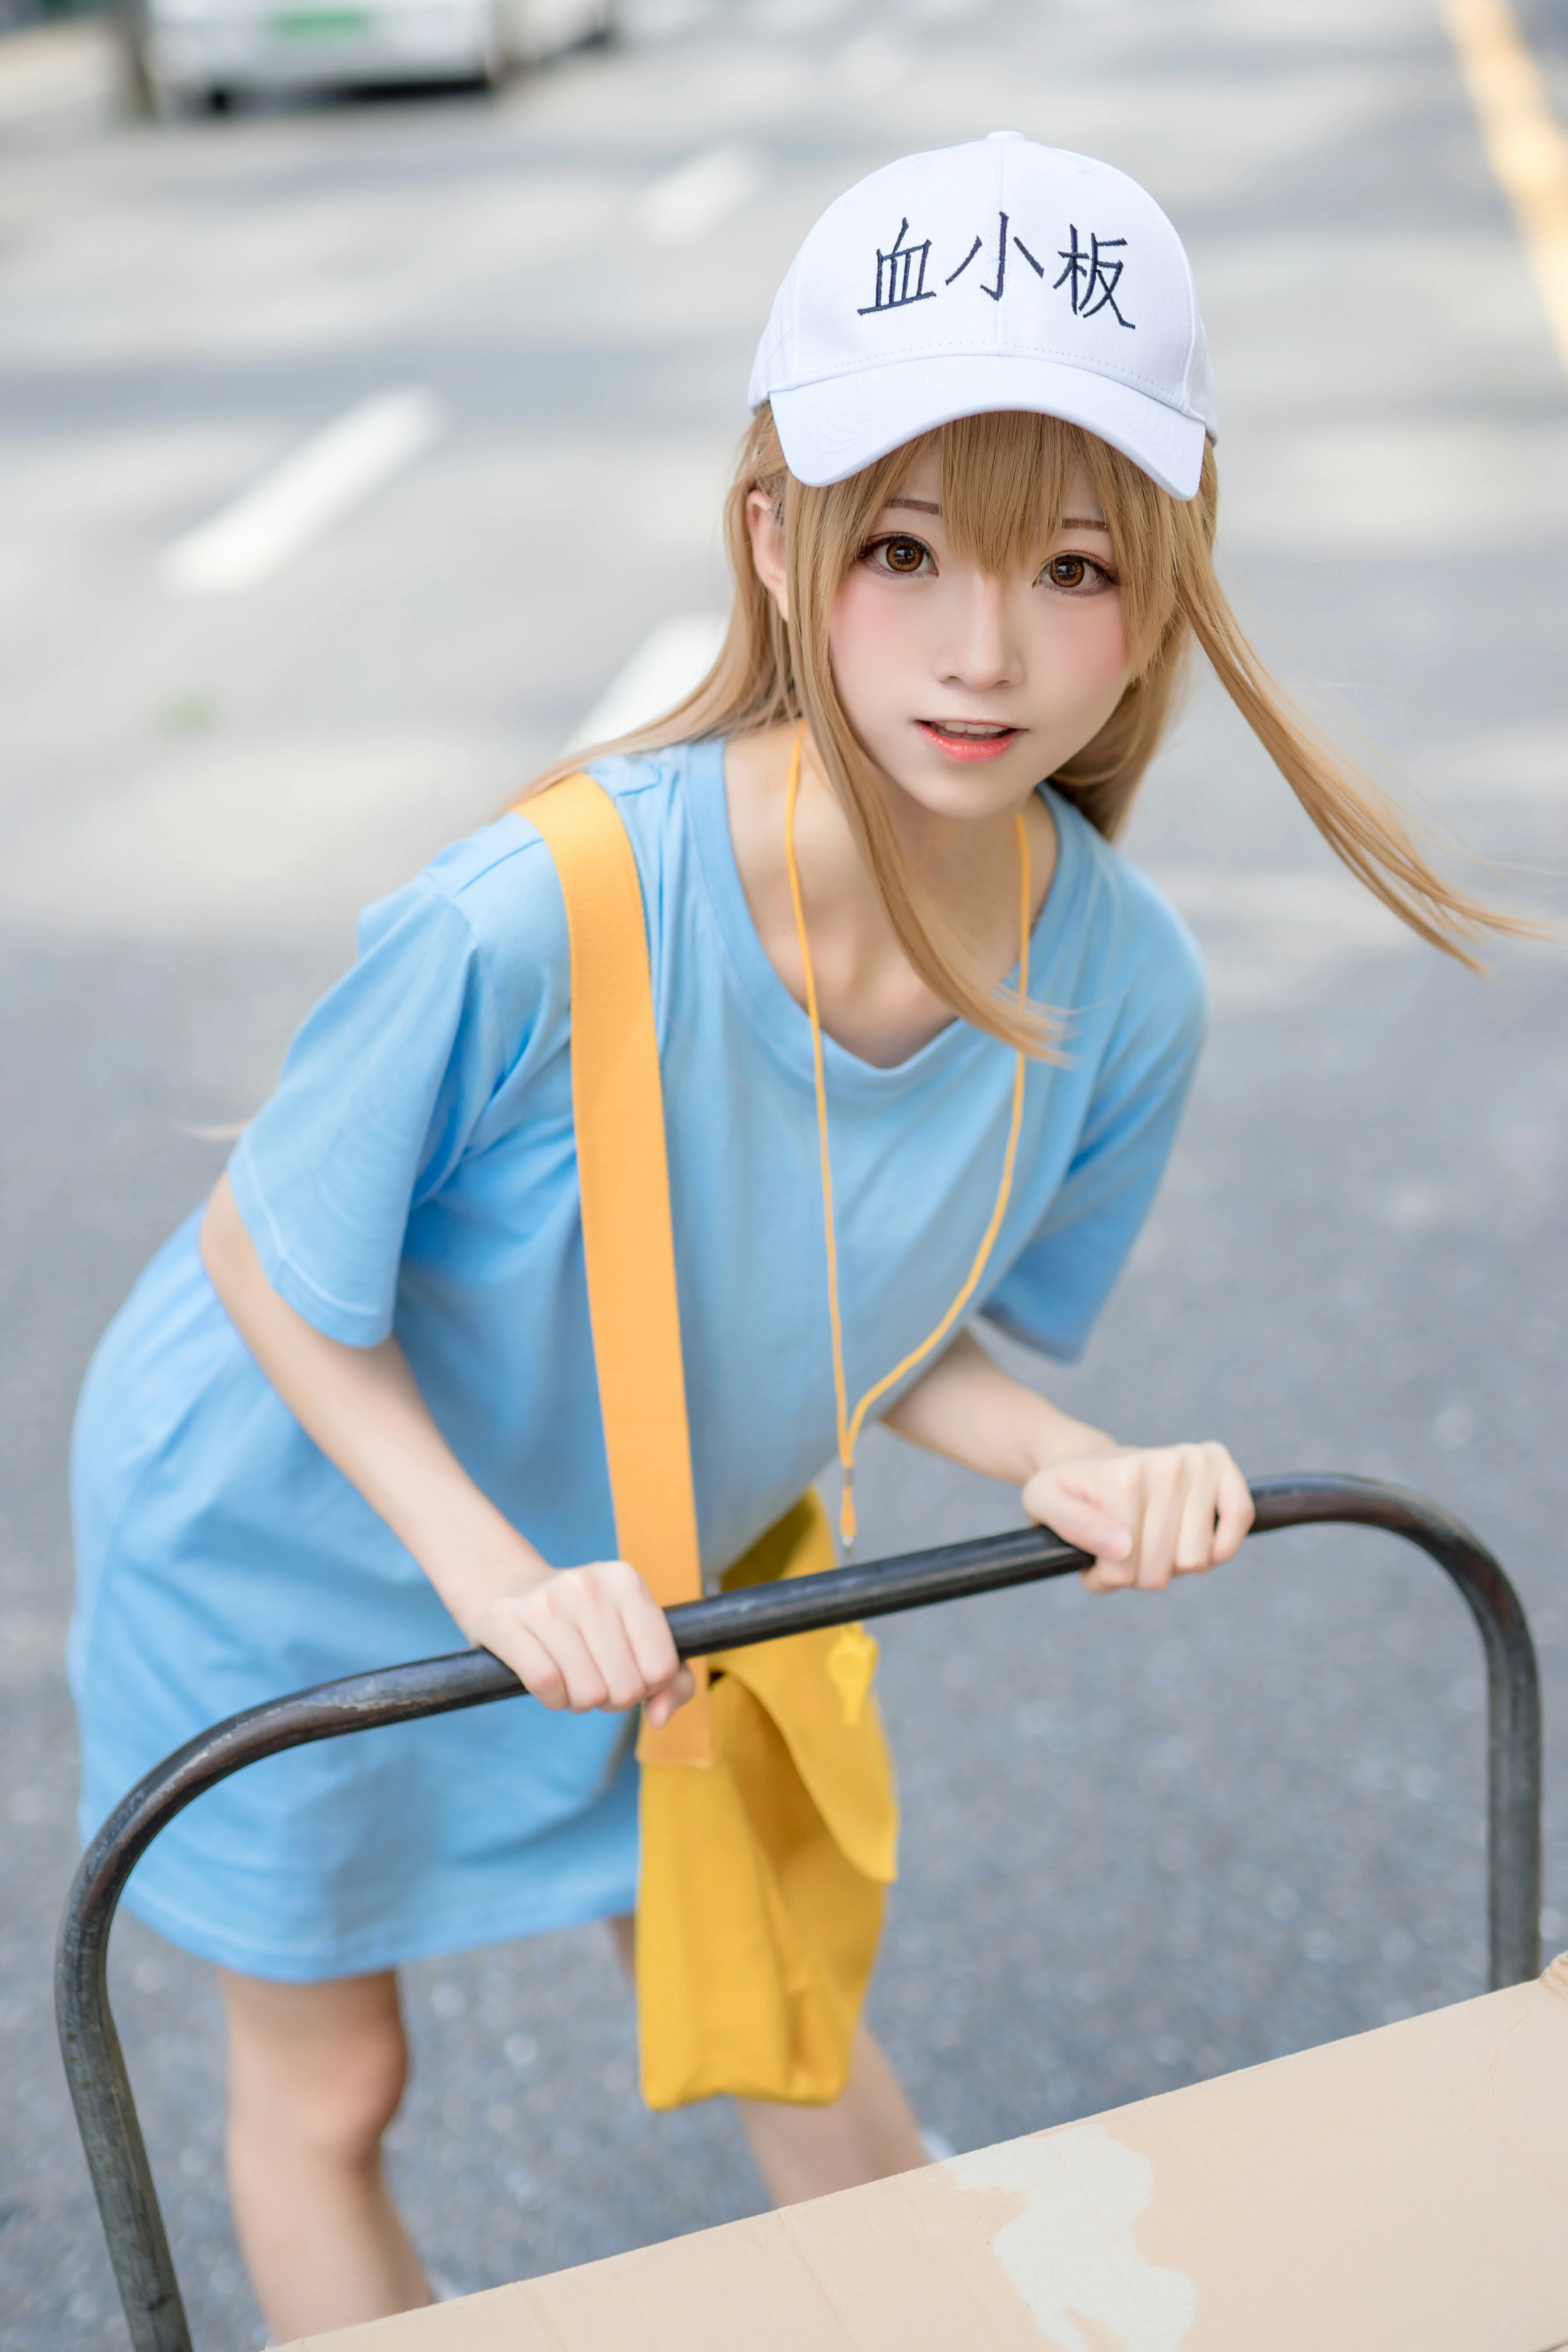 清纯少女快递员 绮太郎Kitaro 血小板 蓝色连身短袖街拍写真,1195